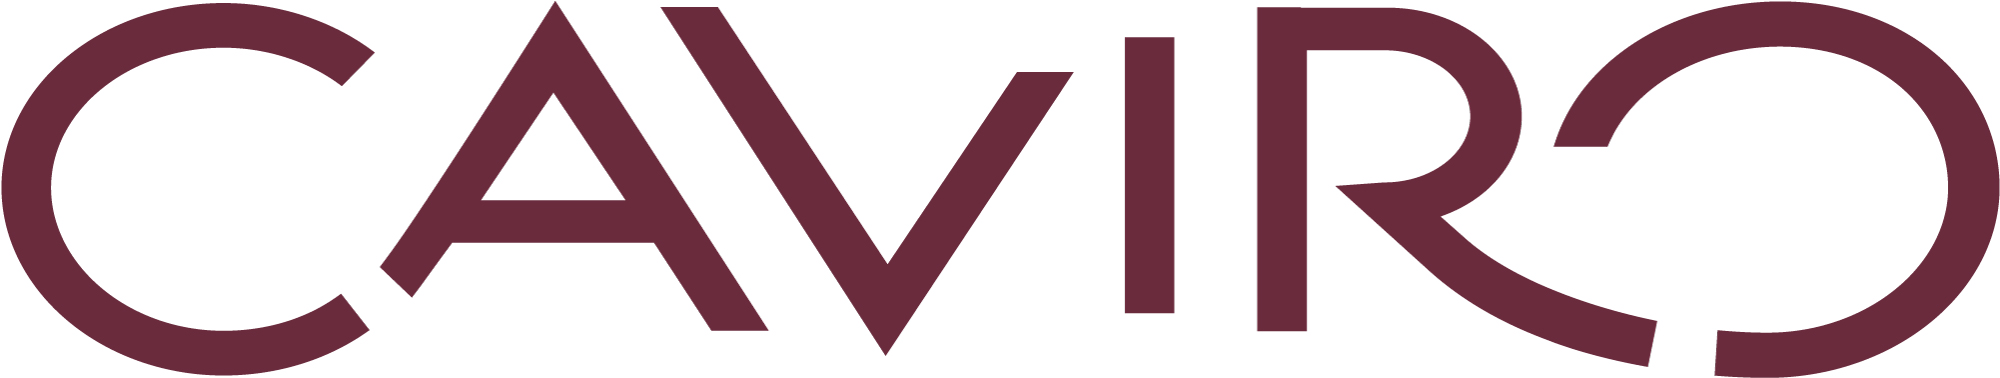 Caviro_Logo